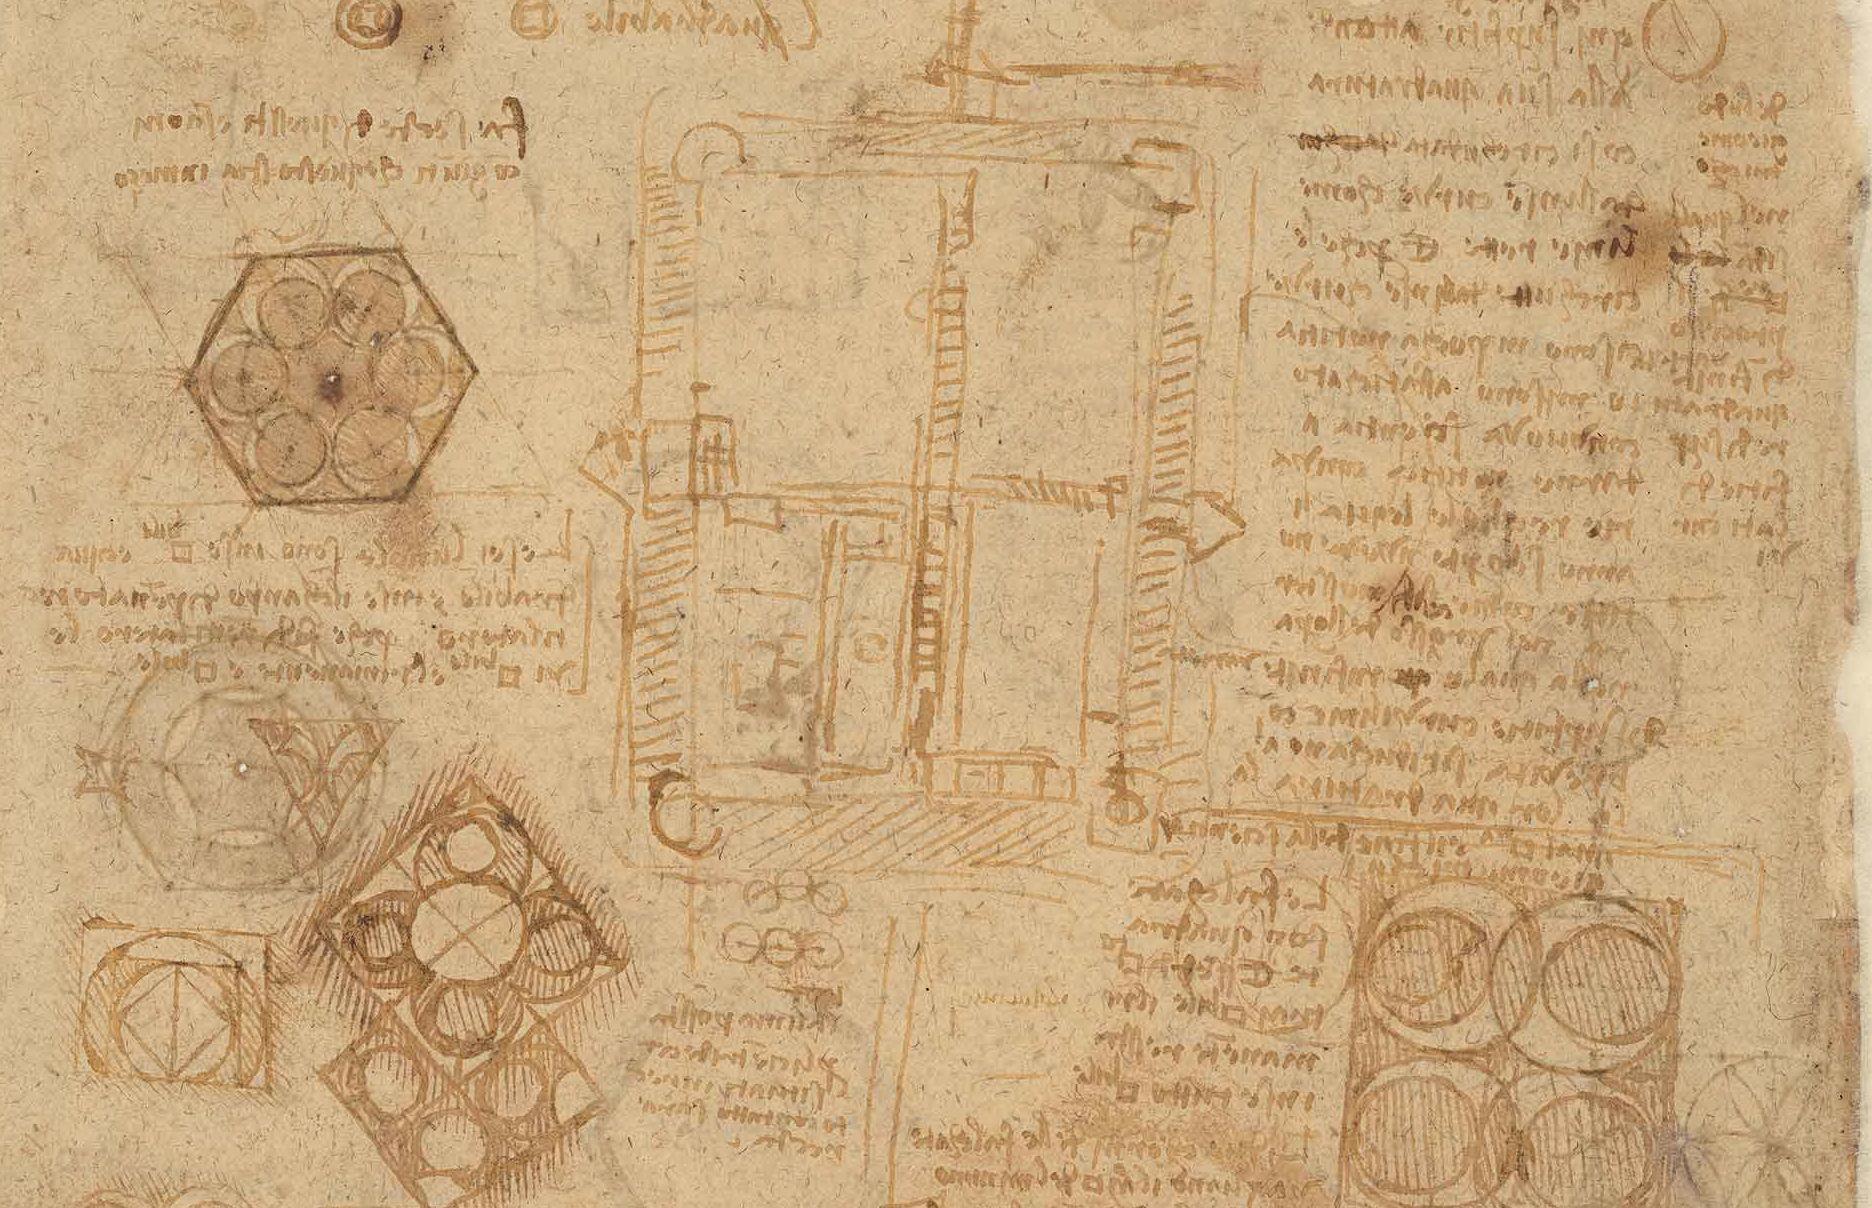 Photo d'une page du Codex Atlanticus de Léonard de Vinci montrant du texte et des diagrammes.